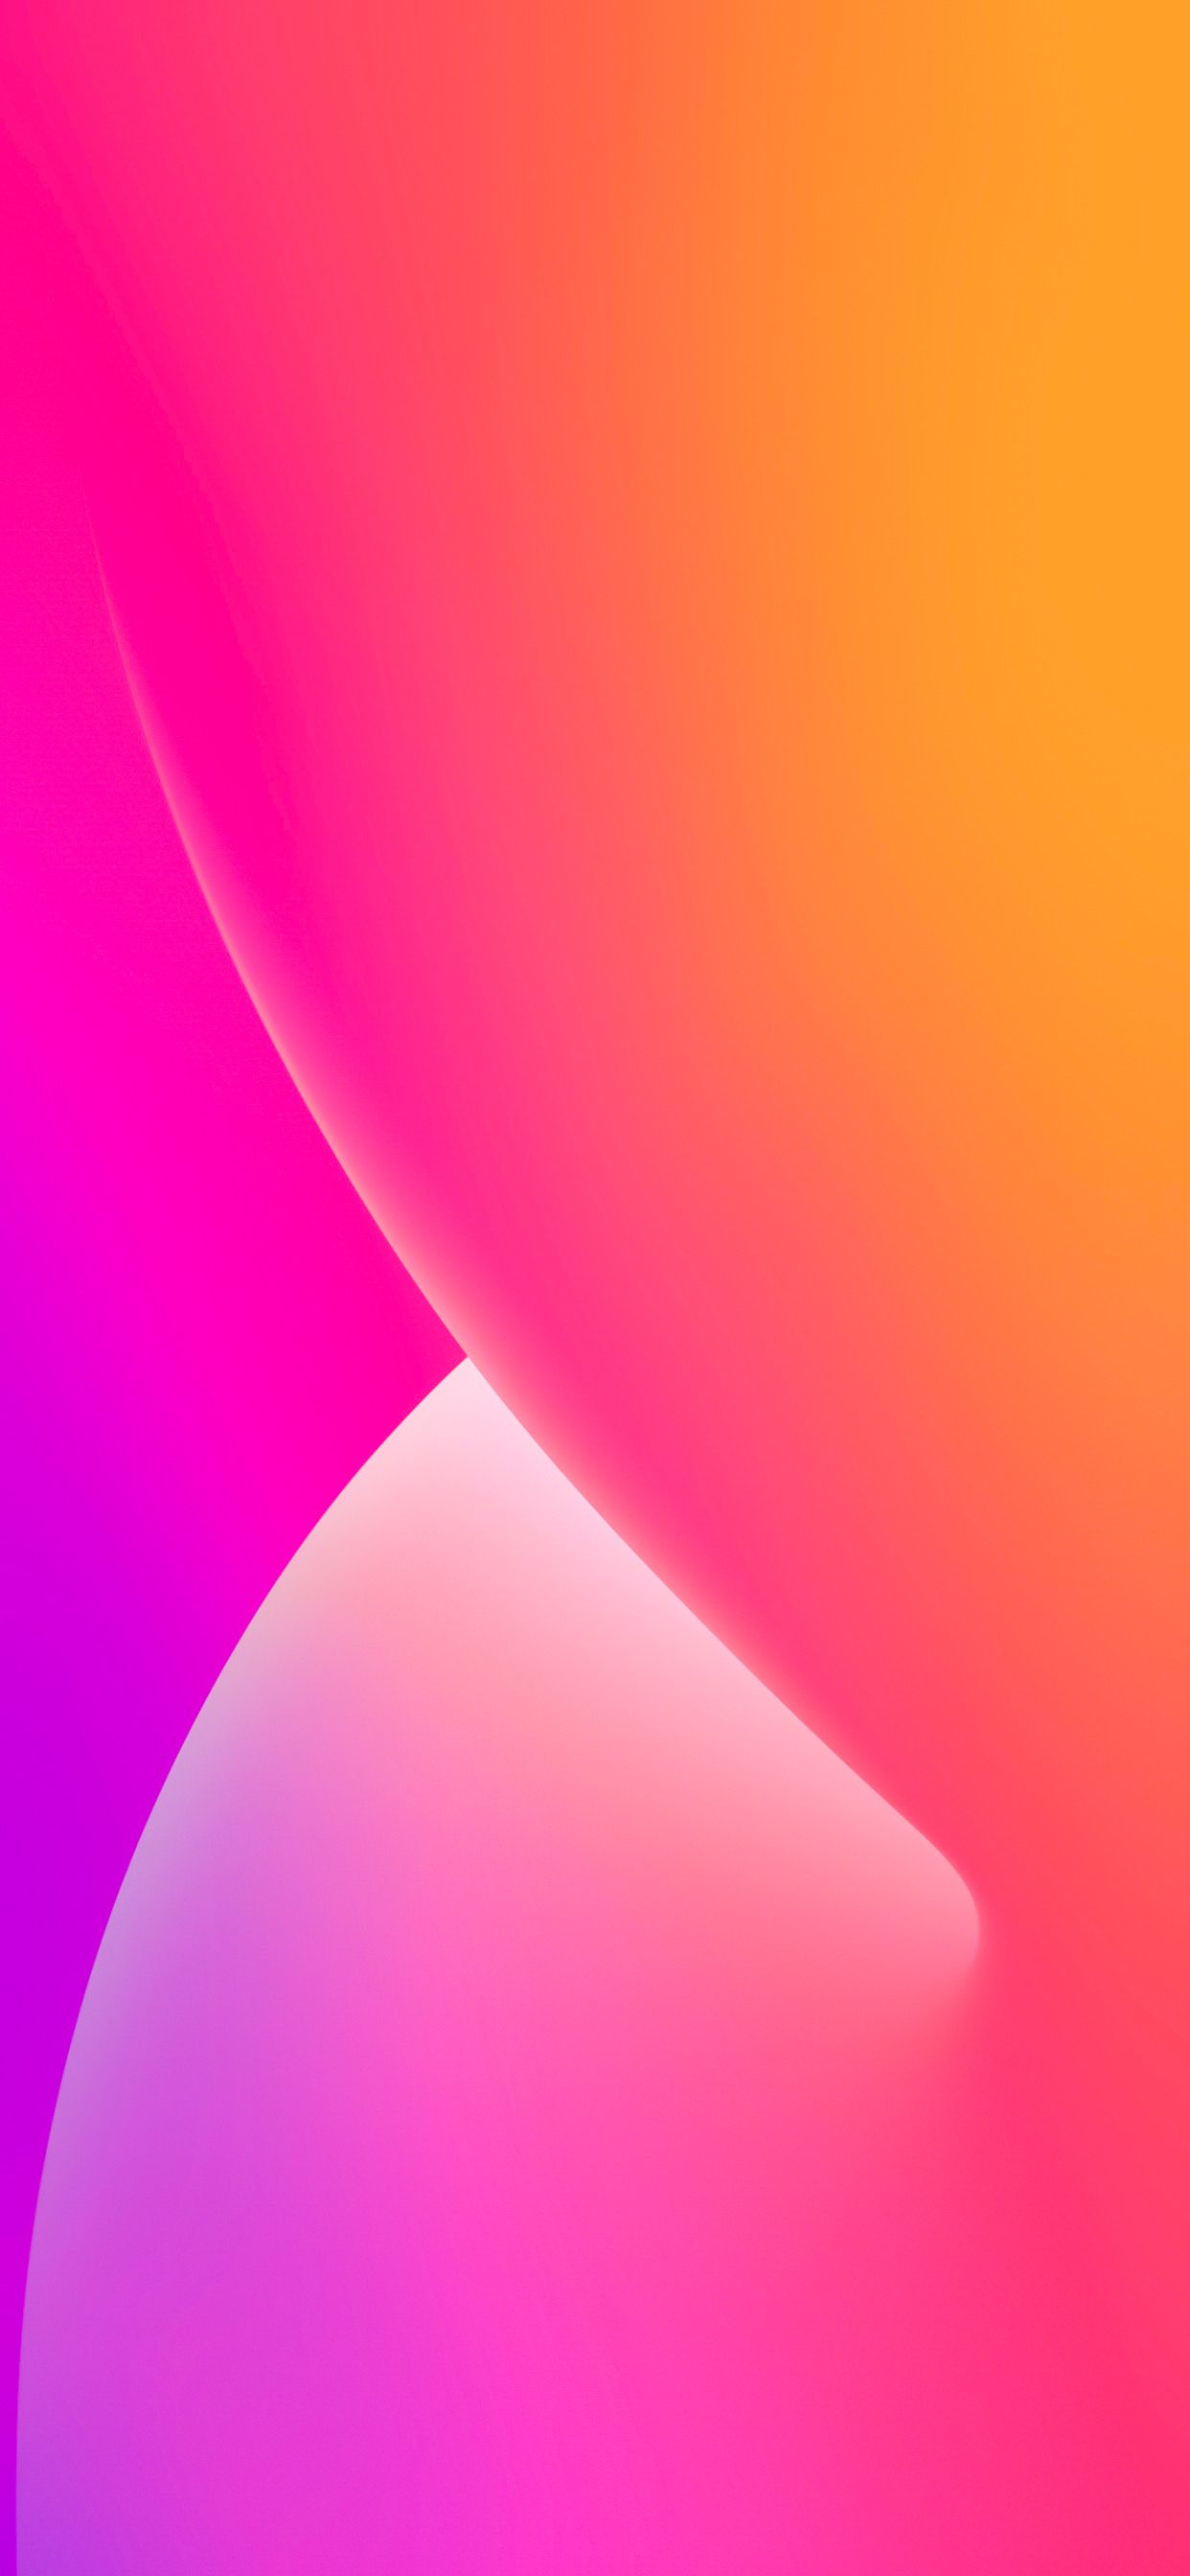 Chào đón năm 2020 với những hình nền iOS 14 miễn phí đầy màu sắc và đẹp mắt. Hãy tải ngay để thay đổi giao diện thiết bị của mình với những họa tiết độc đáo và thanh lịch.